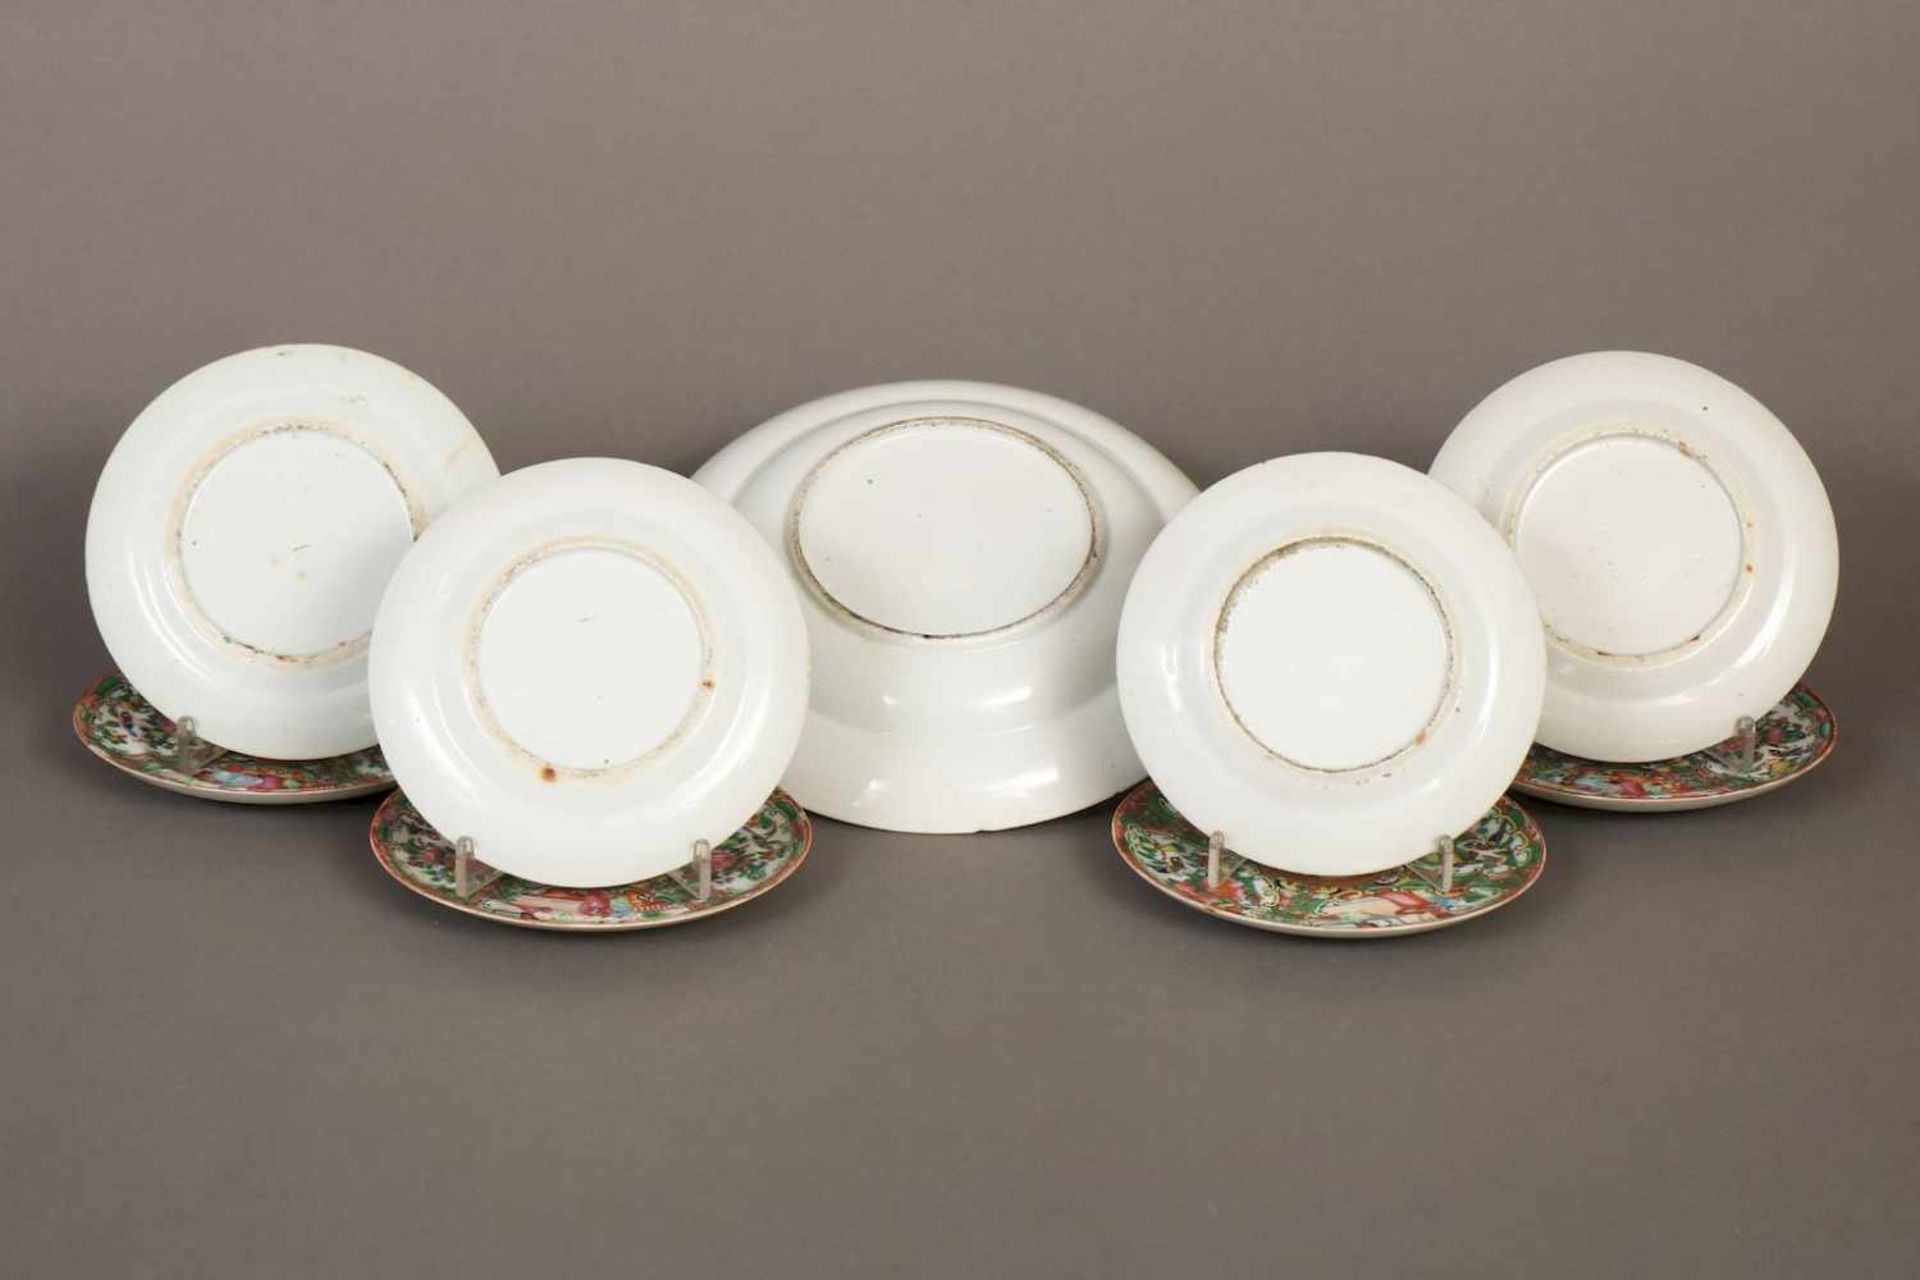 9 chinesische PorzellantellerKanton, 19. Jhdt., bestehend aus 8 kleineren Tellern (D 14cm) und 1 - Image 2 of 2